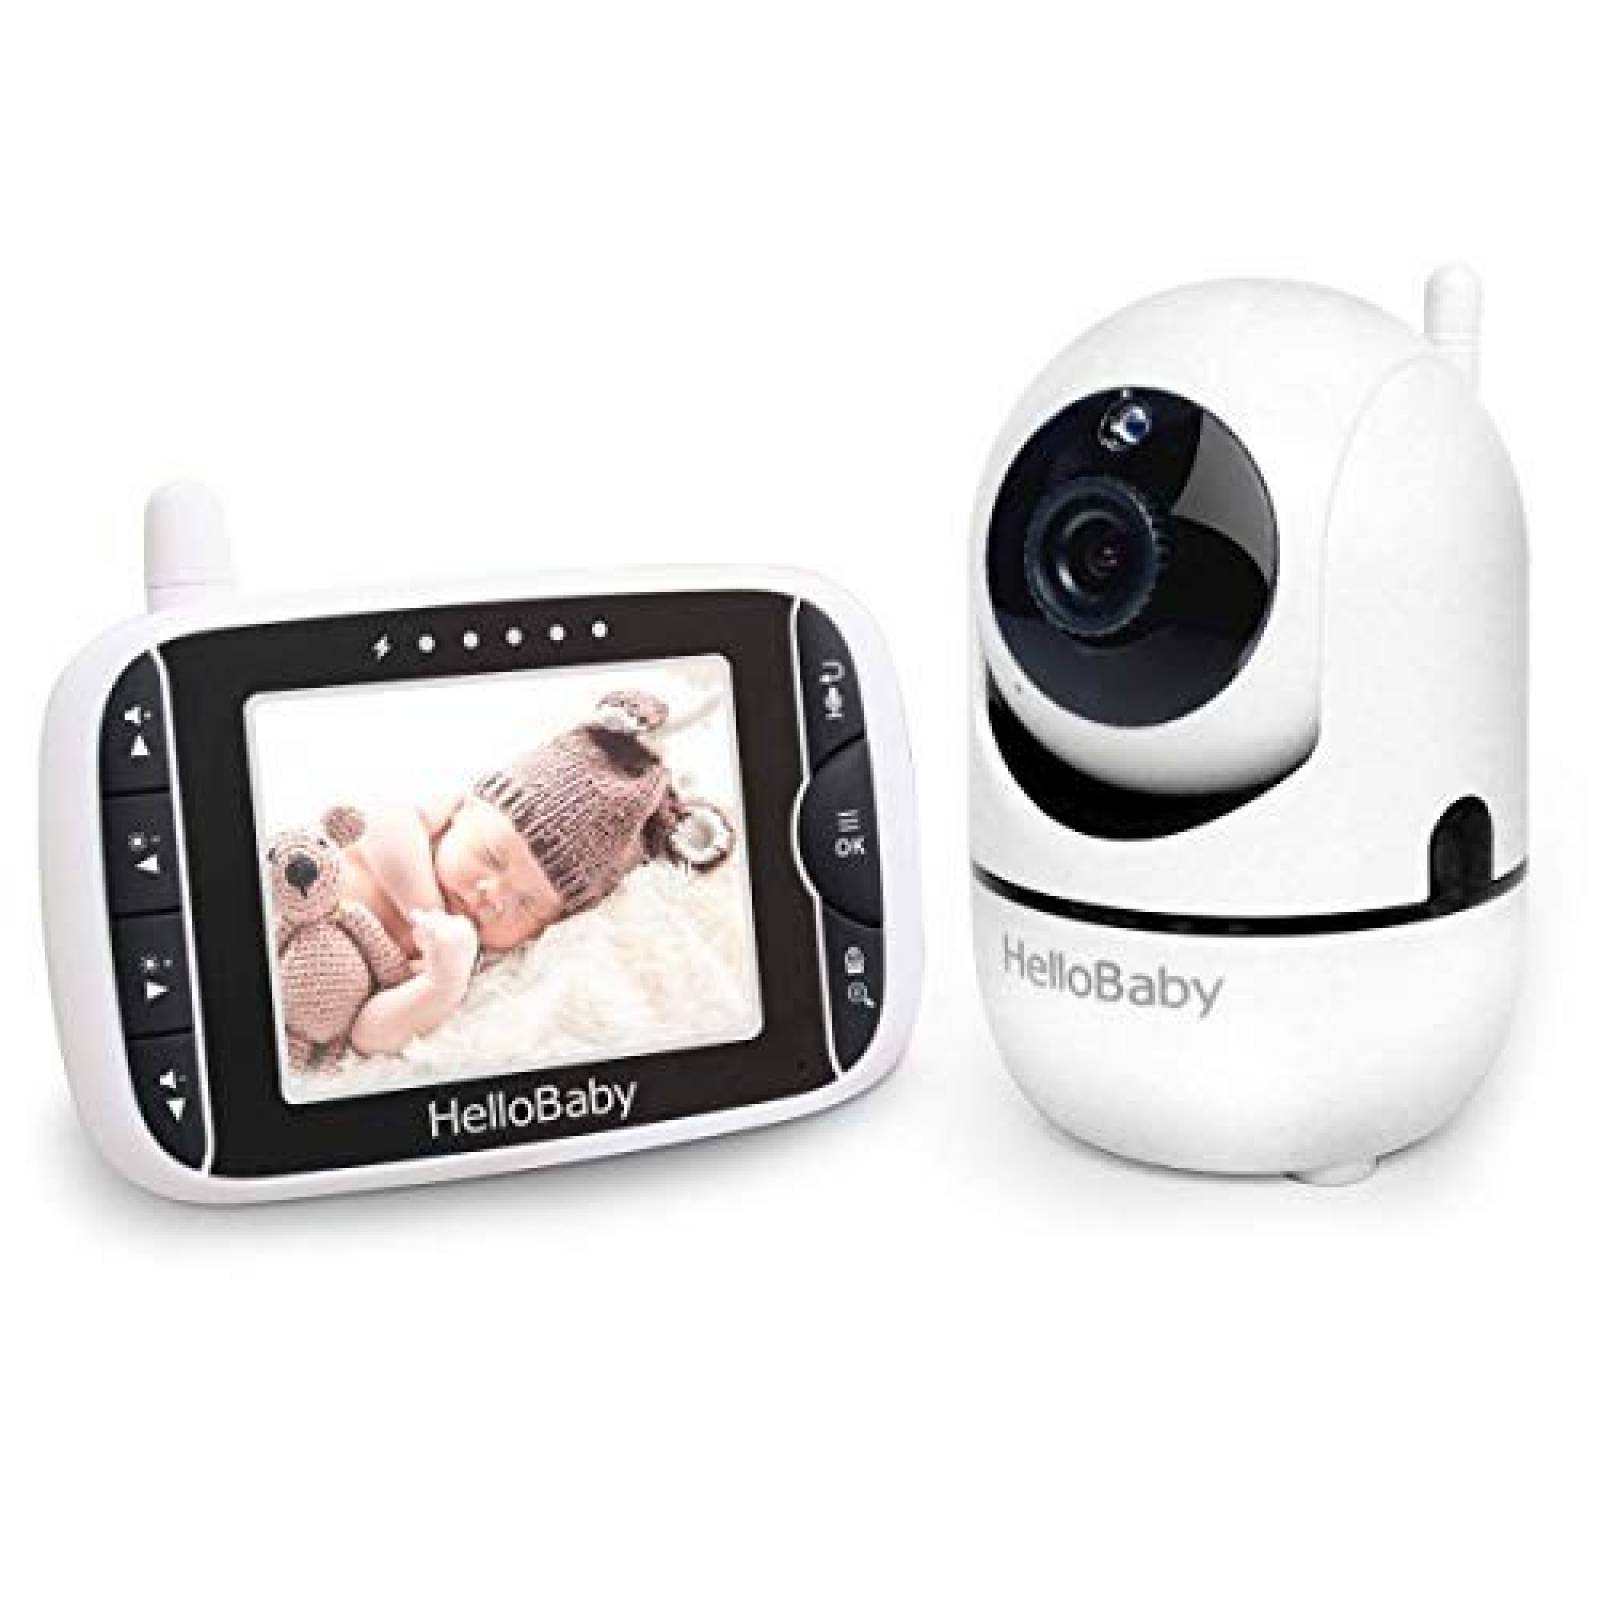 Monitor de bebé Hello Baby-US 3.2'' LCD infrarrojo -Negro